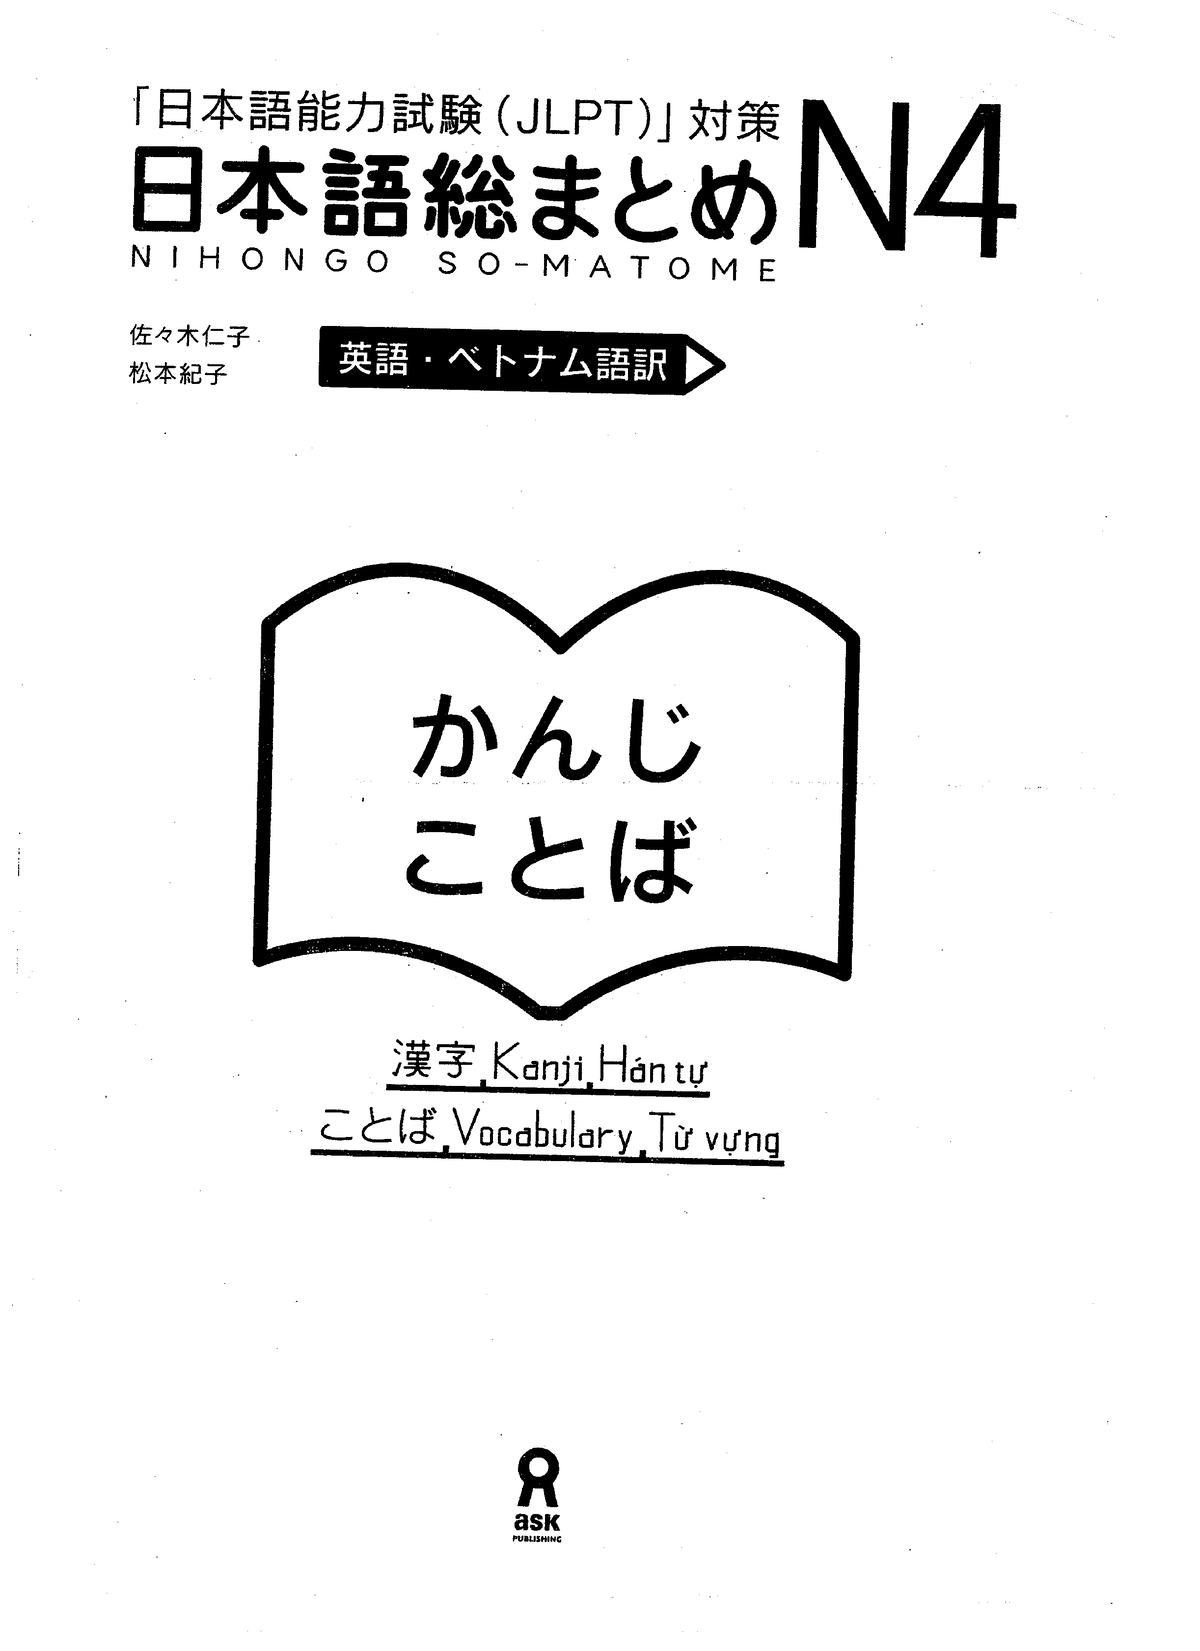 Có những bước nào để học từ vựng Kanji N4?
